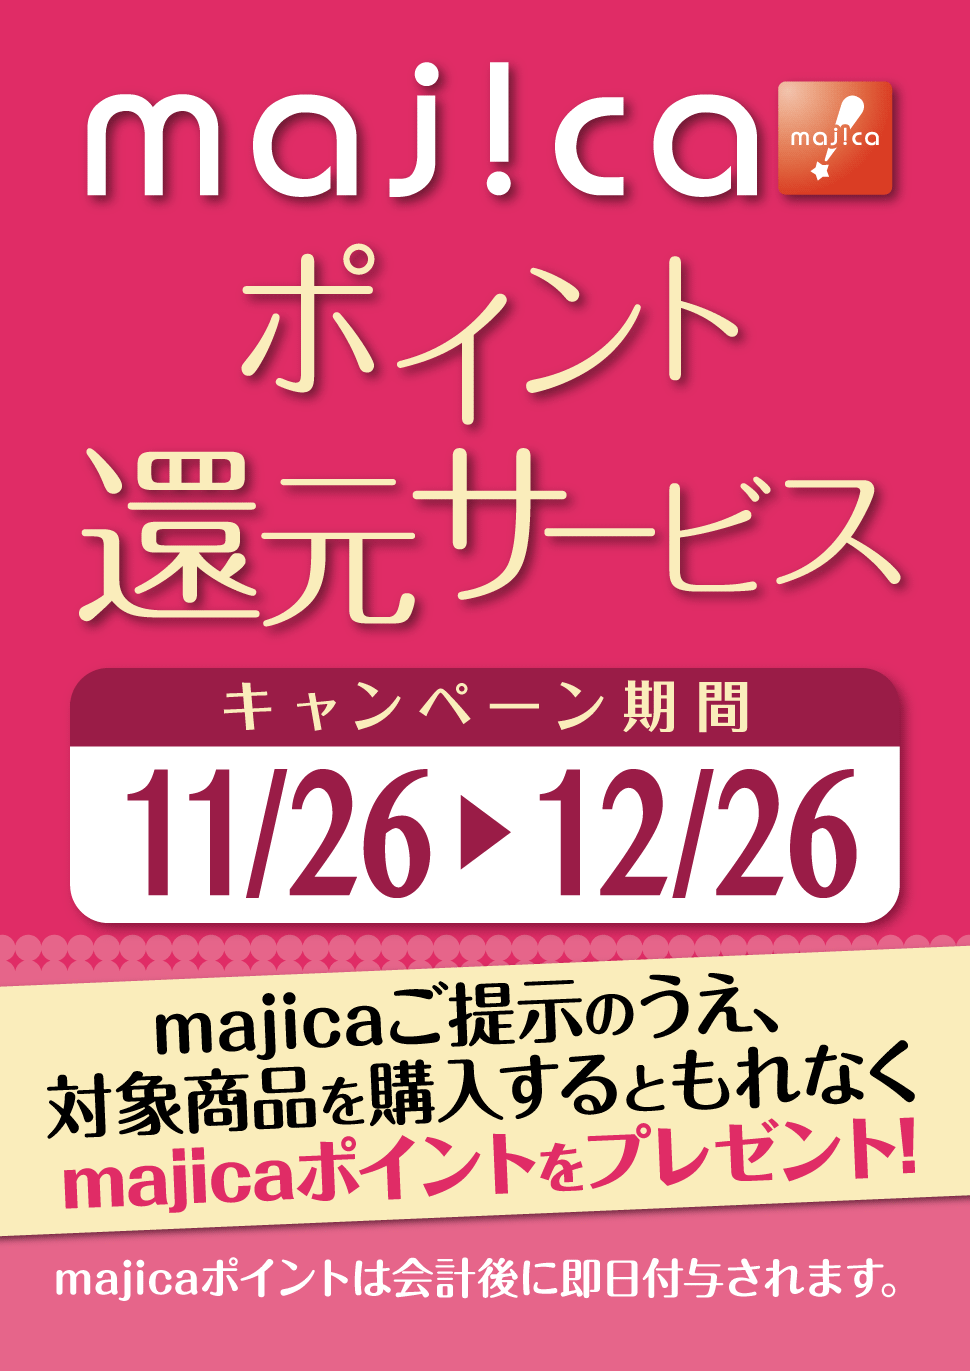 majicaポイント還元サービス「香水キャンぺーン」